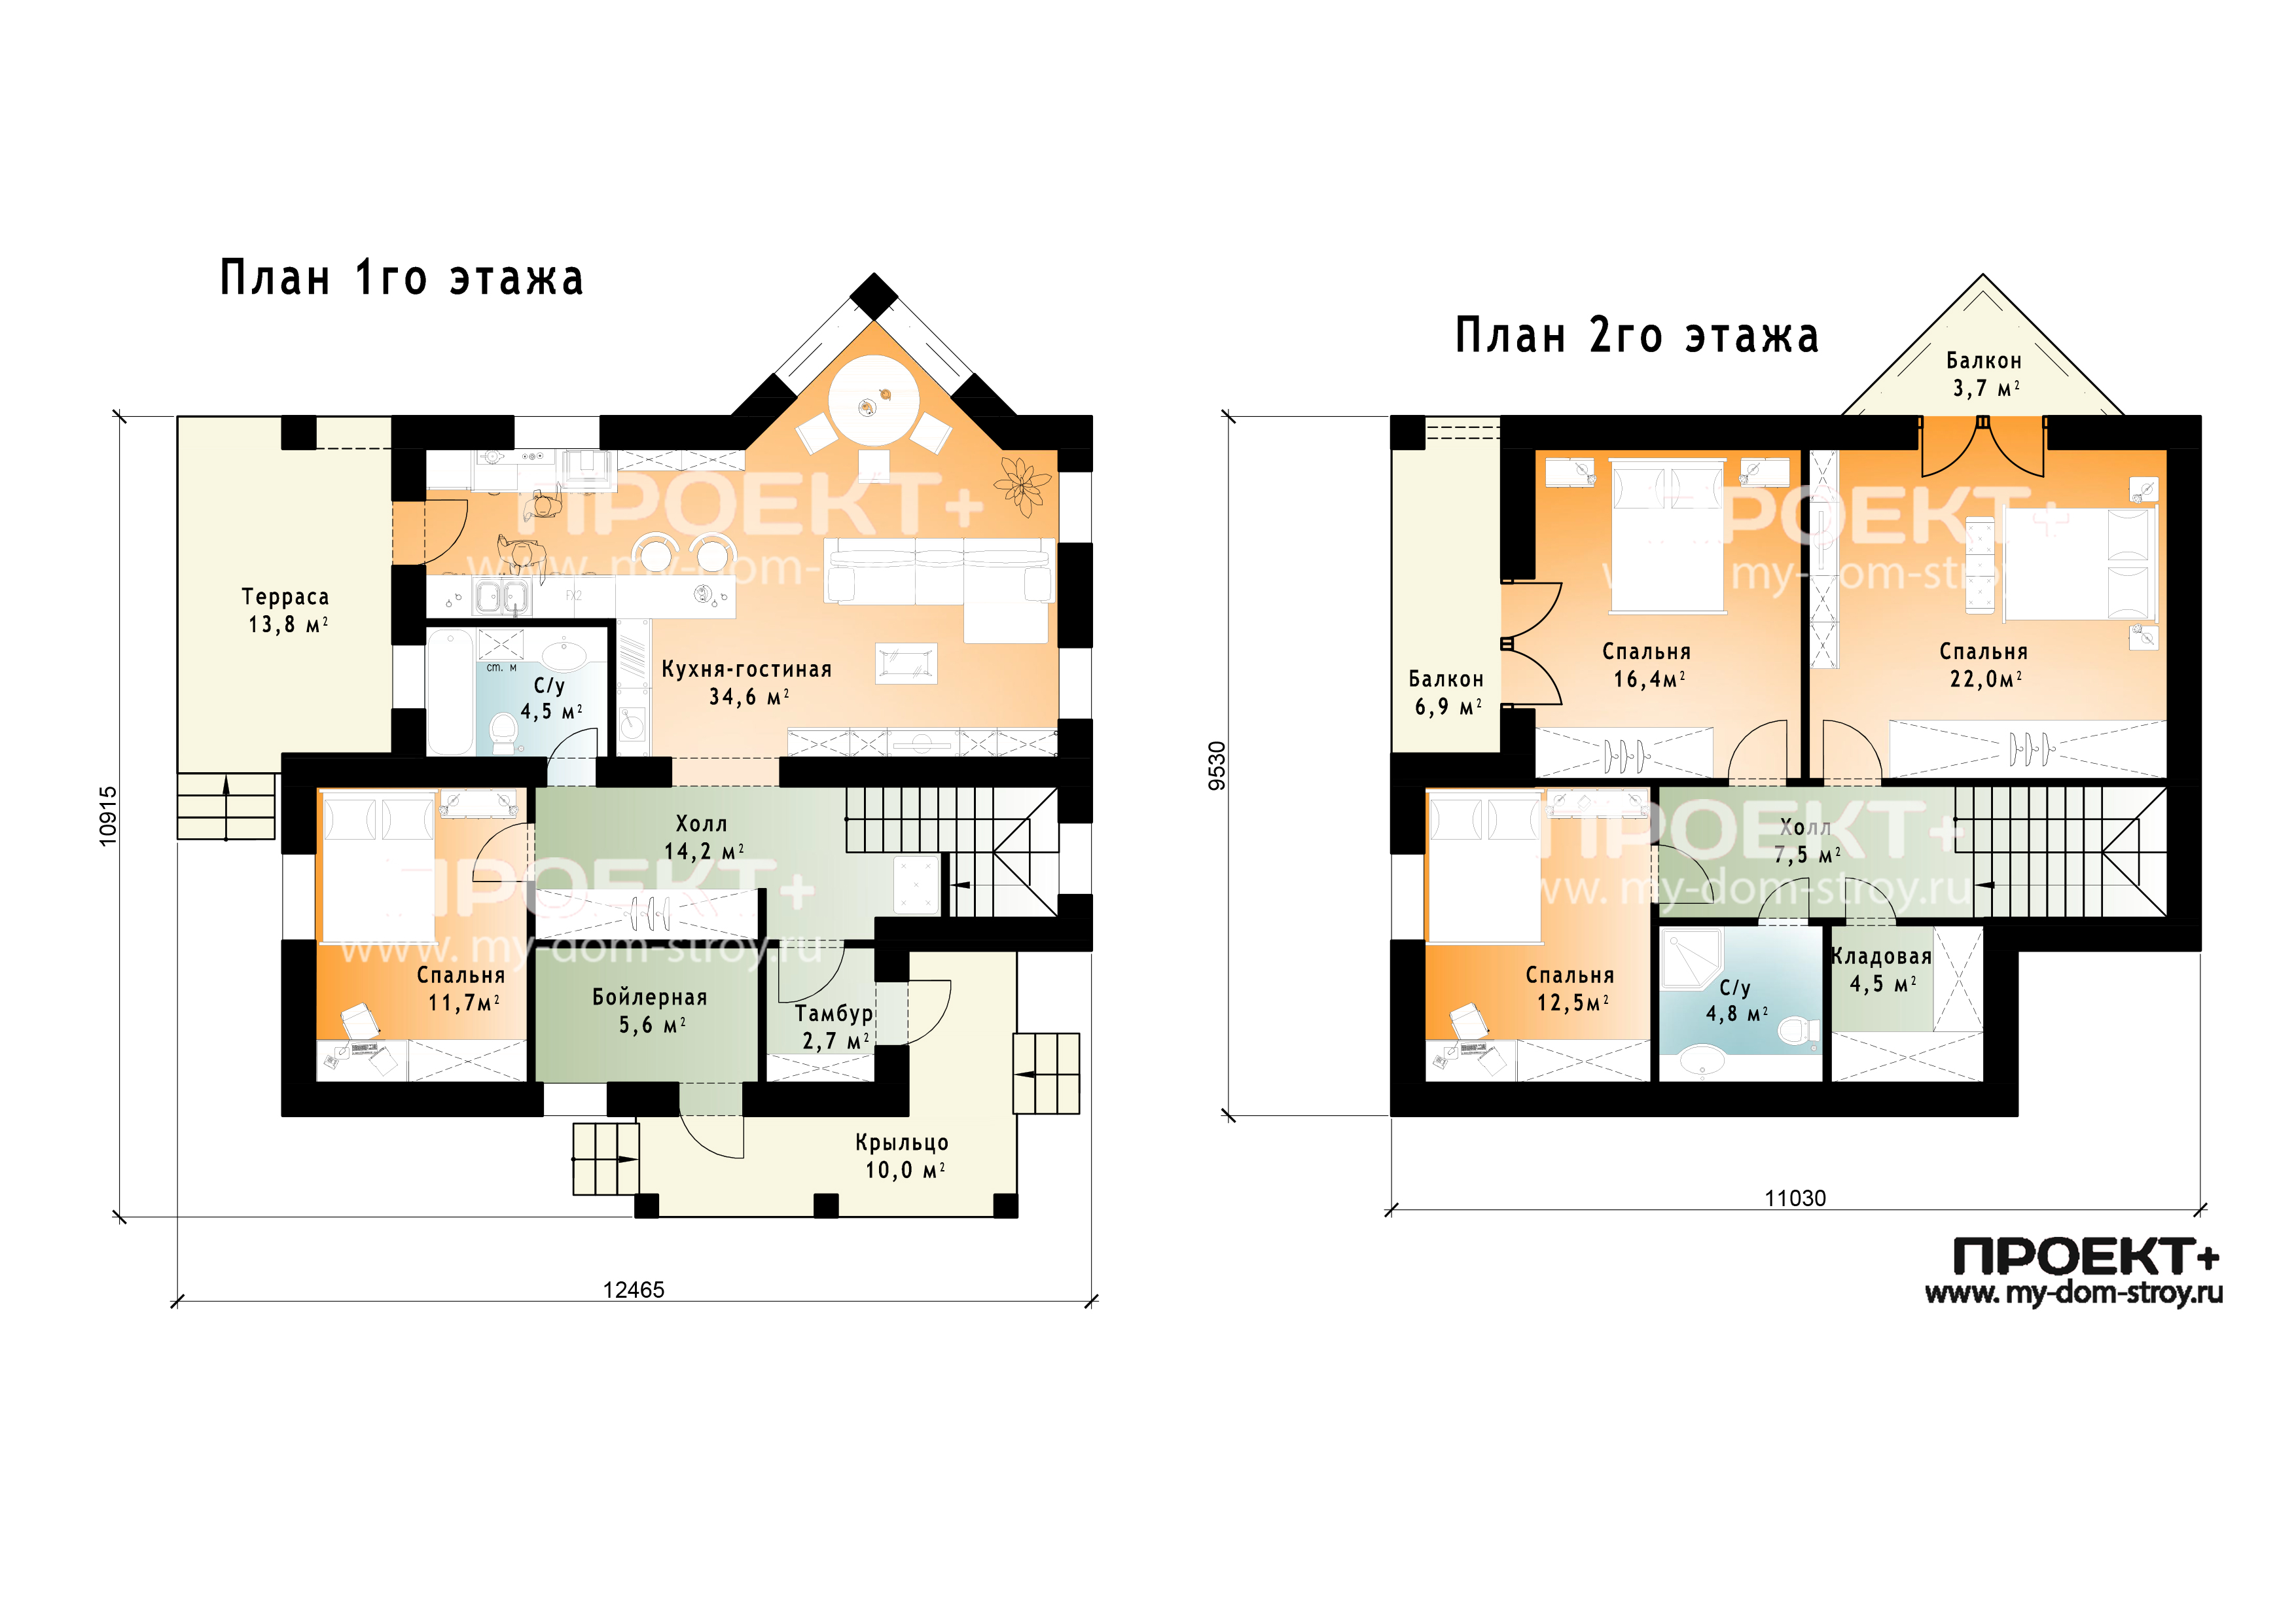 Проект ковид. План 1-го этажа дома. План 1 го этажа частный дом. Этаж b1. 1-97 Этажи.